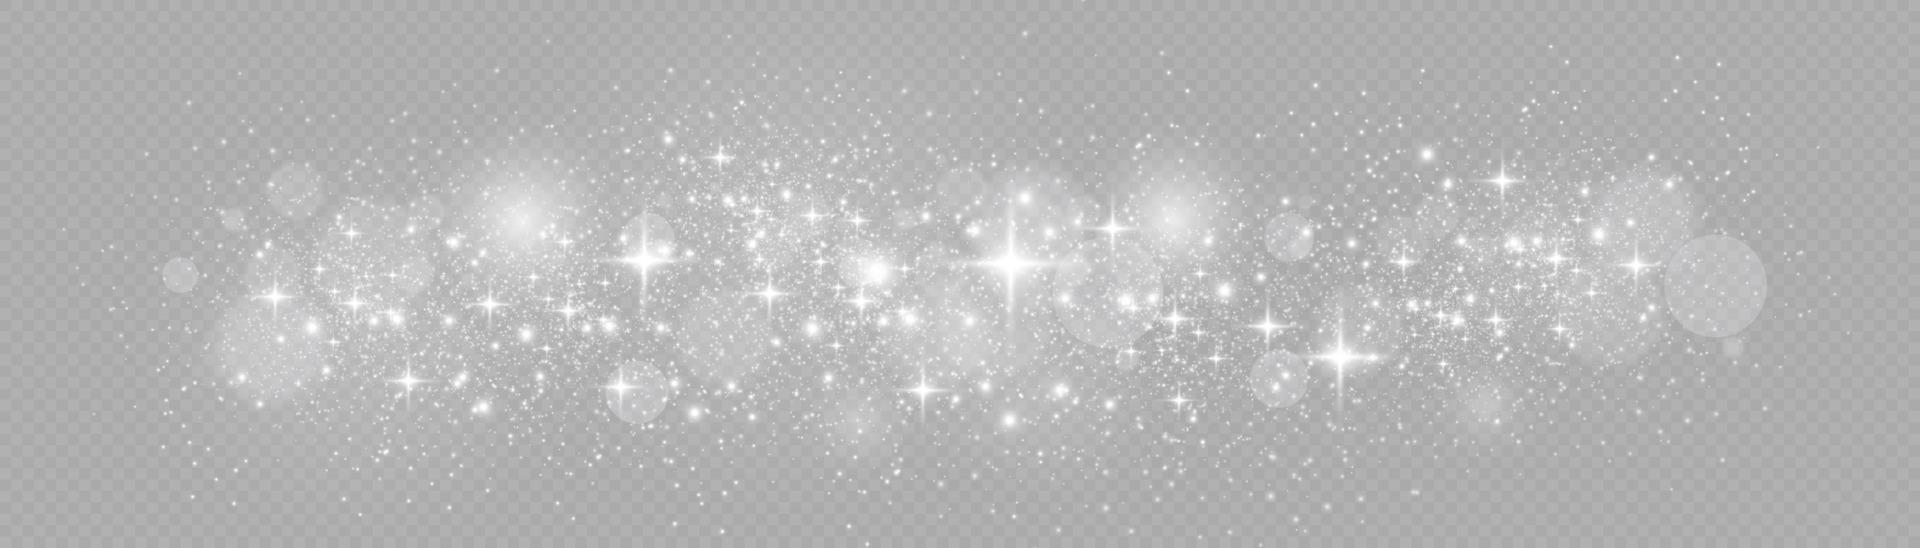 étincelles blanches effet de lumière spécial scintillant. le vecteur scintille. effet de particules de poussière magique étincelante. étincelles de poussière d'étoiles